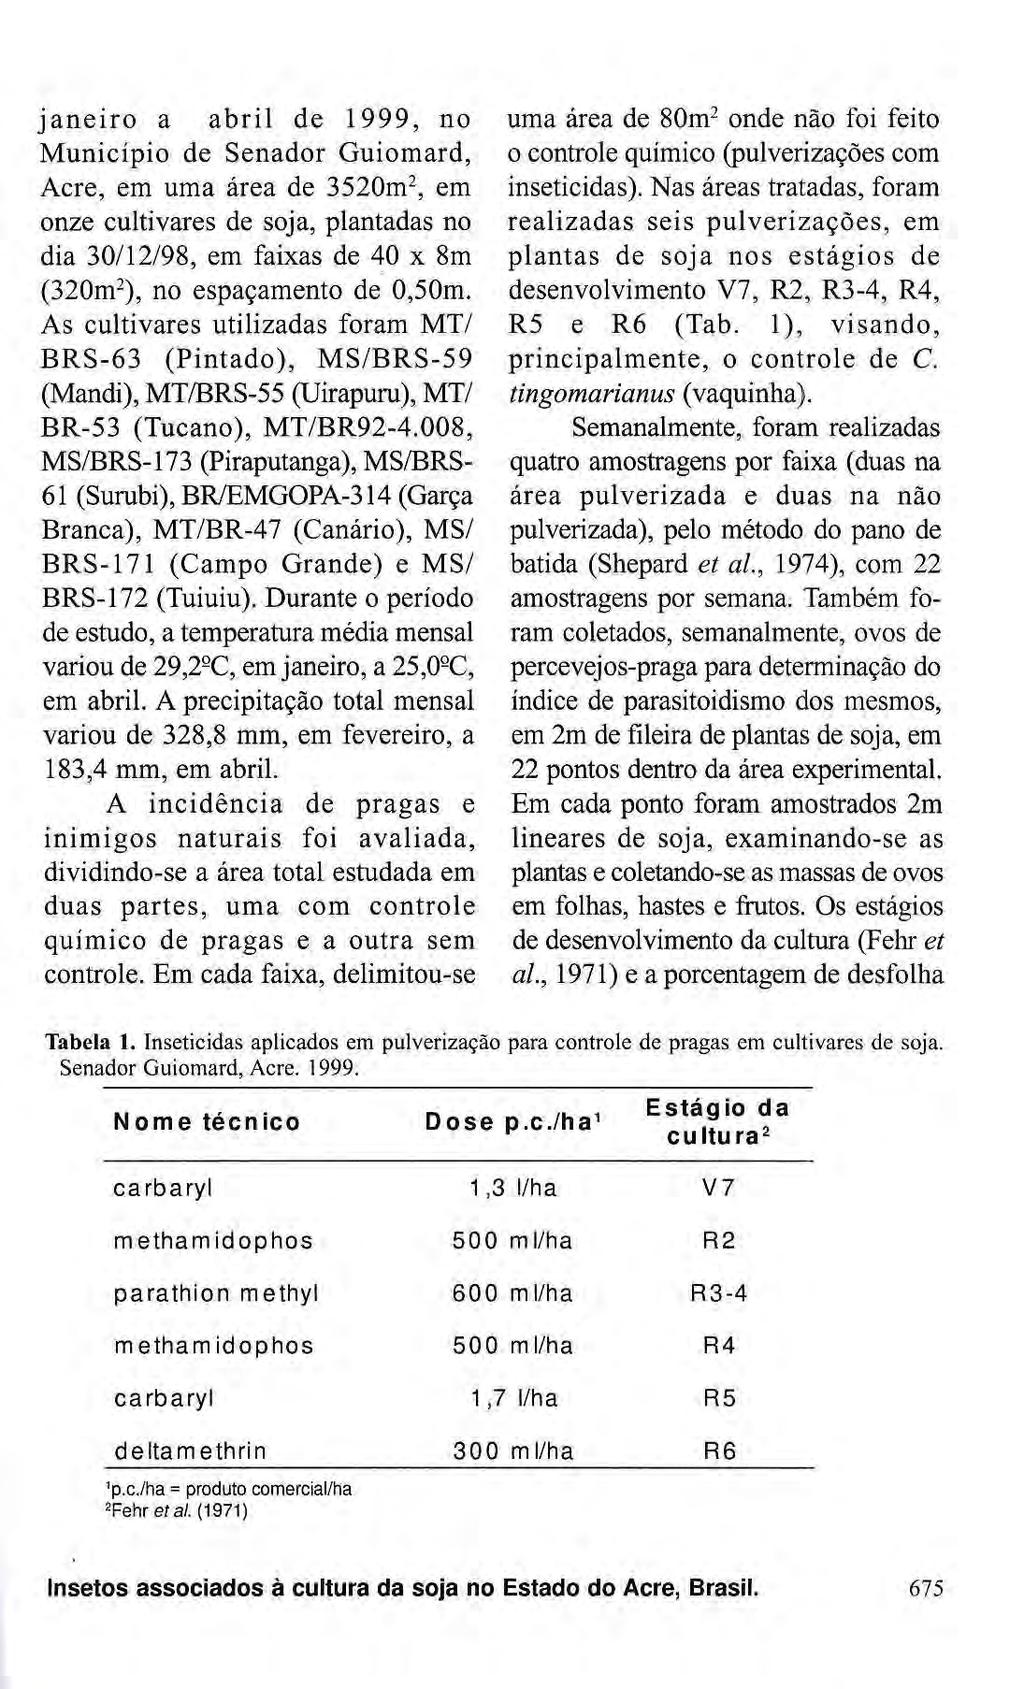 Janeiro a abril de 1999, no Município de Senador Guiomard, Acre, em uma área de 3520m 2, em onze cultivares de soja, plantadas no dia 30/12/98, em faixas de 40 χ 8m (320m 2 ), no espaçamento de 0,50m.